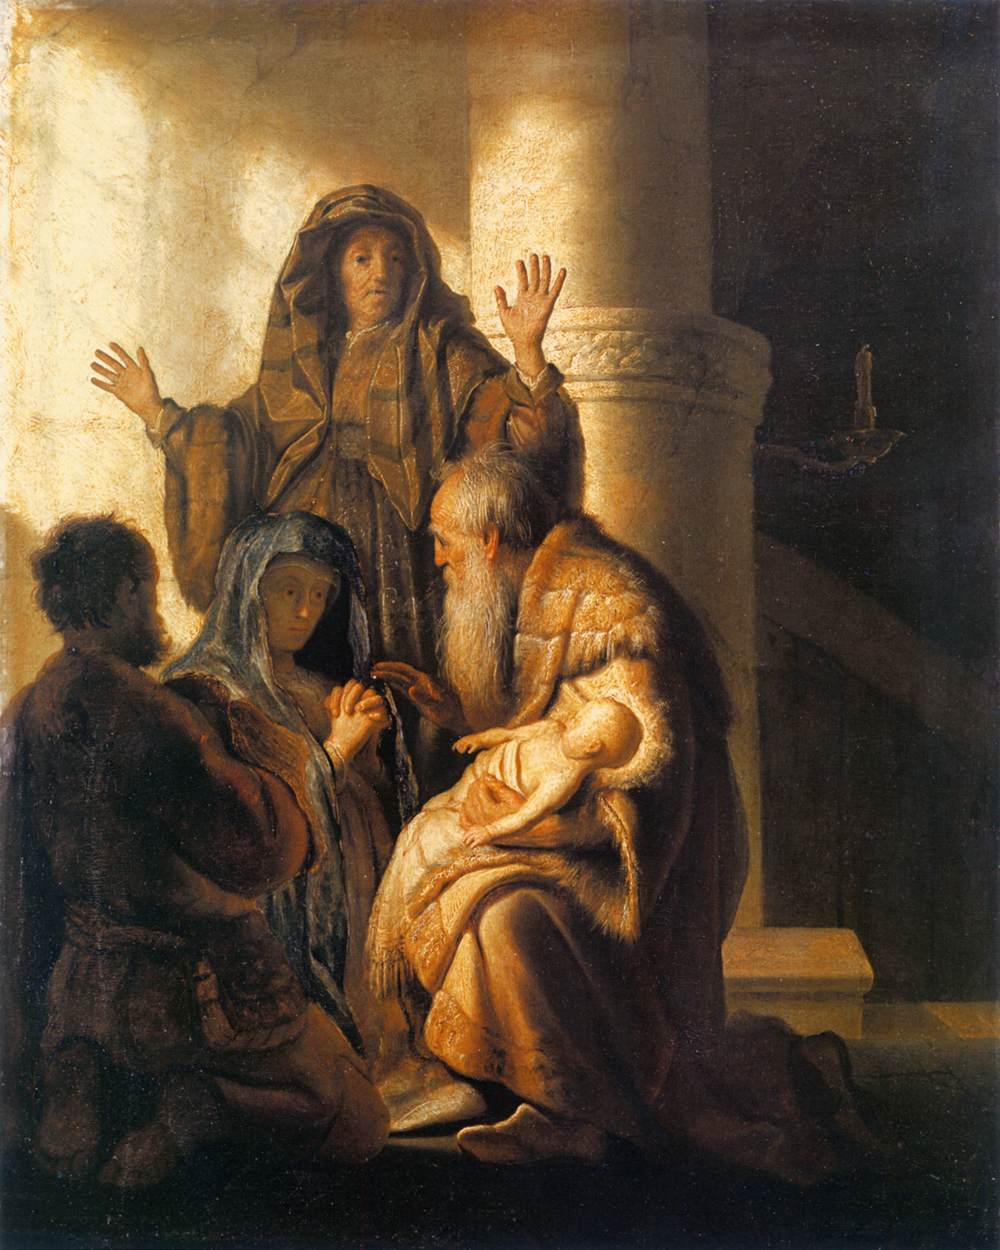 Simeon og Ana anerkender Herren i Jesus